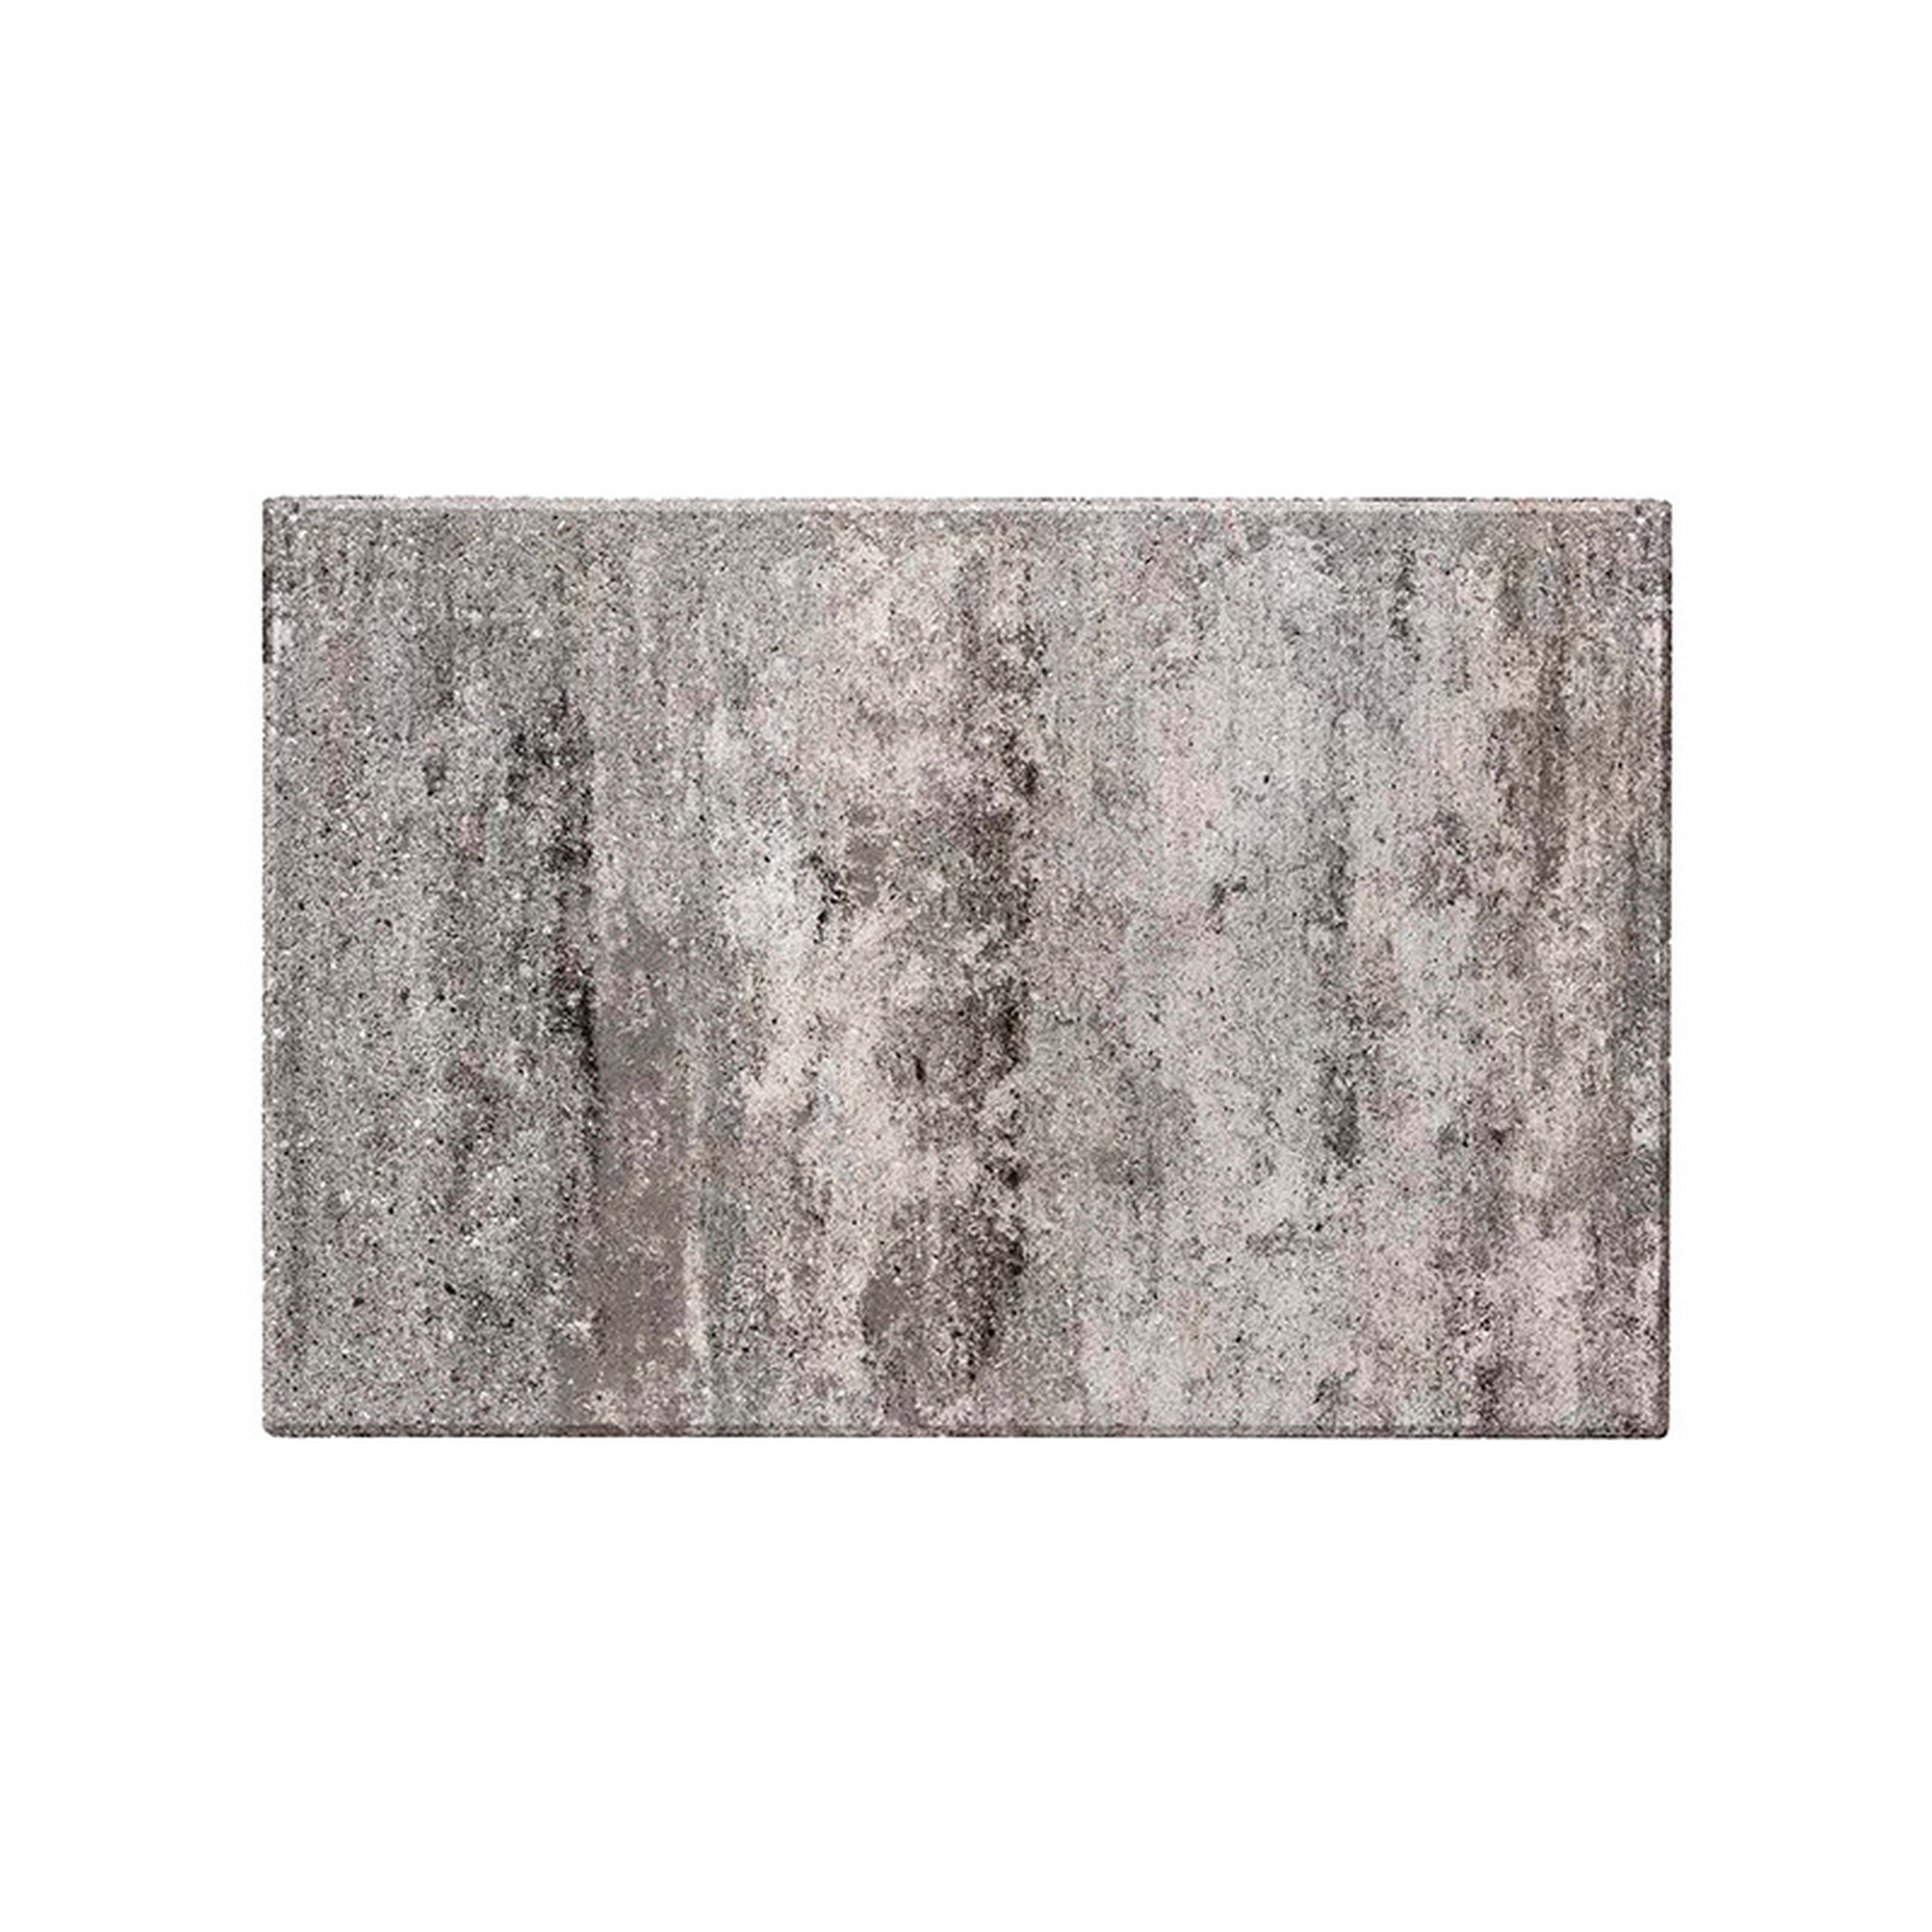 Terrassenplatte 'T-Court Via' greige 60 x 30 x 4 cm + product picture